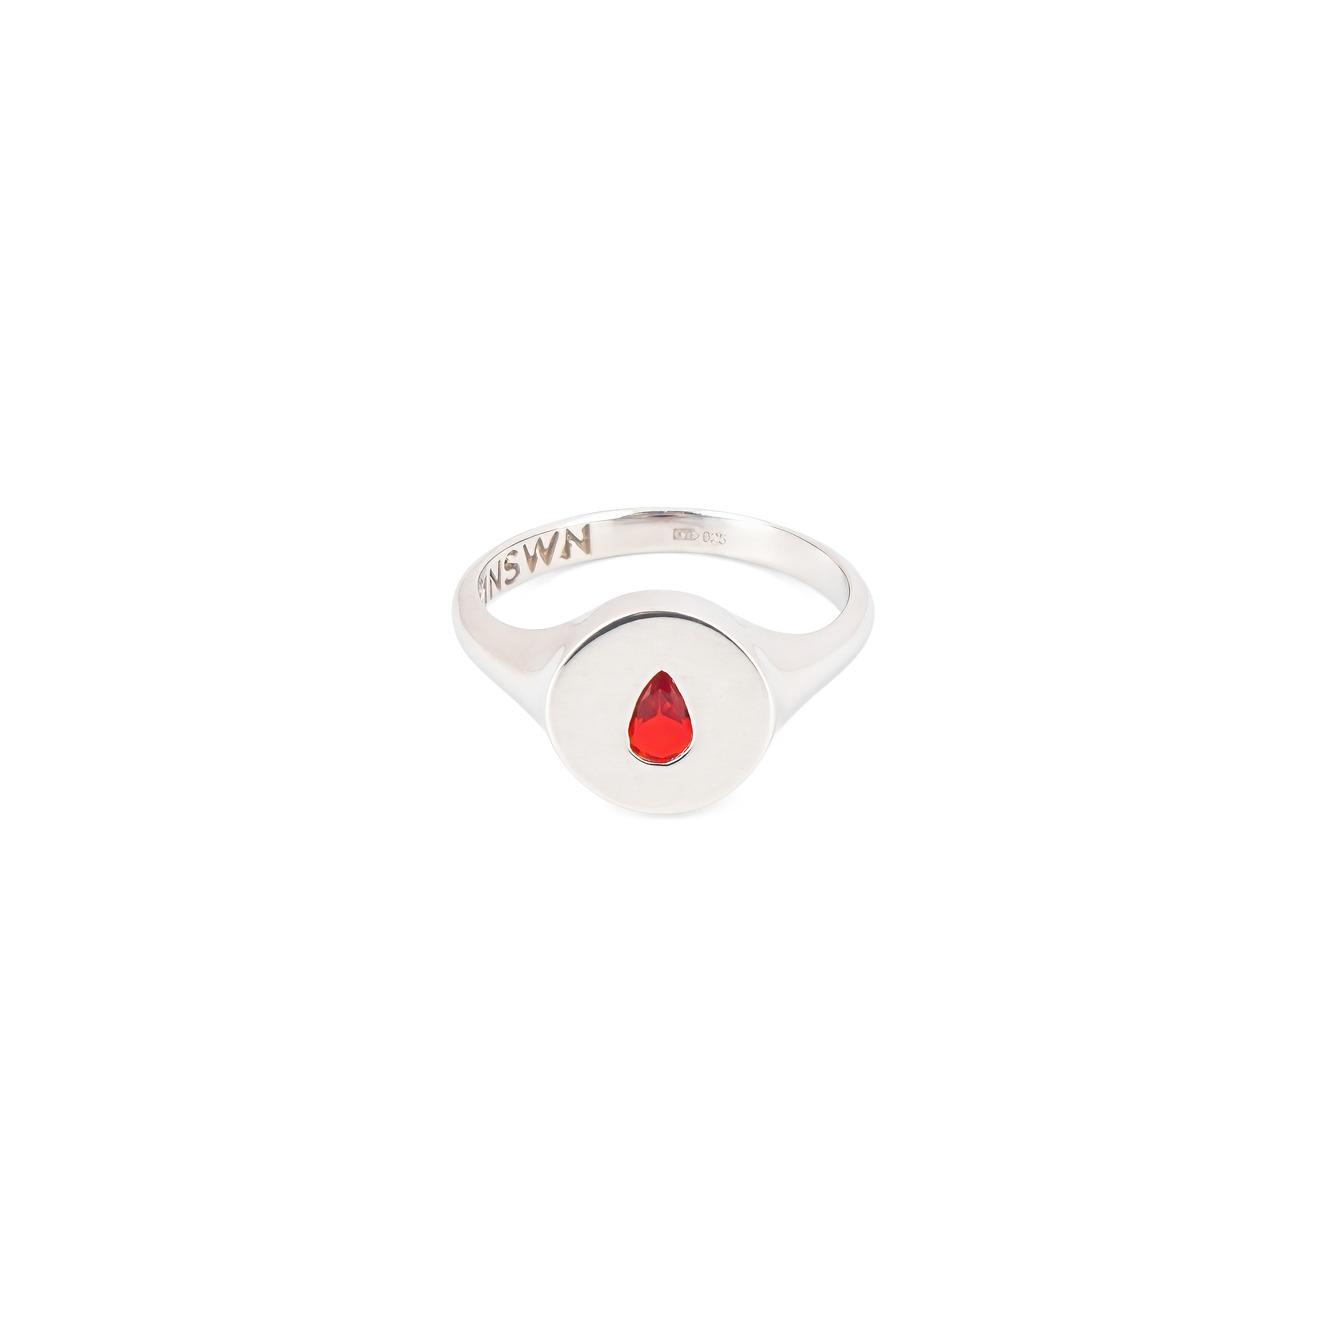 Moonswoon Кольцо-печатка из серебра с красной каплей moonswoon кольцо печатка из серебра с красной каплей